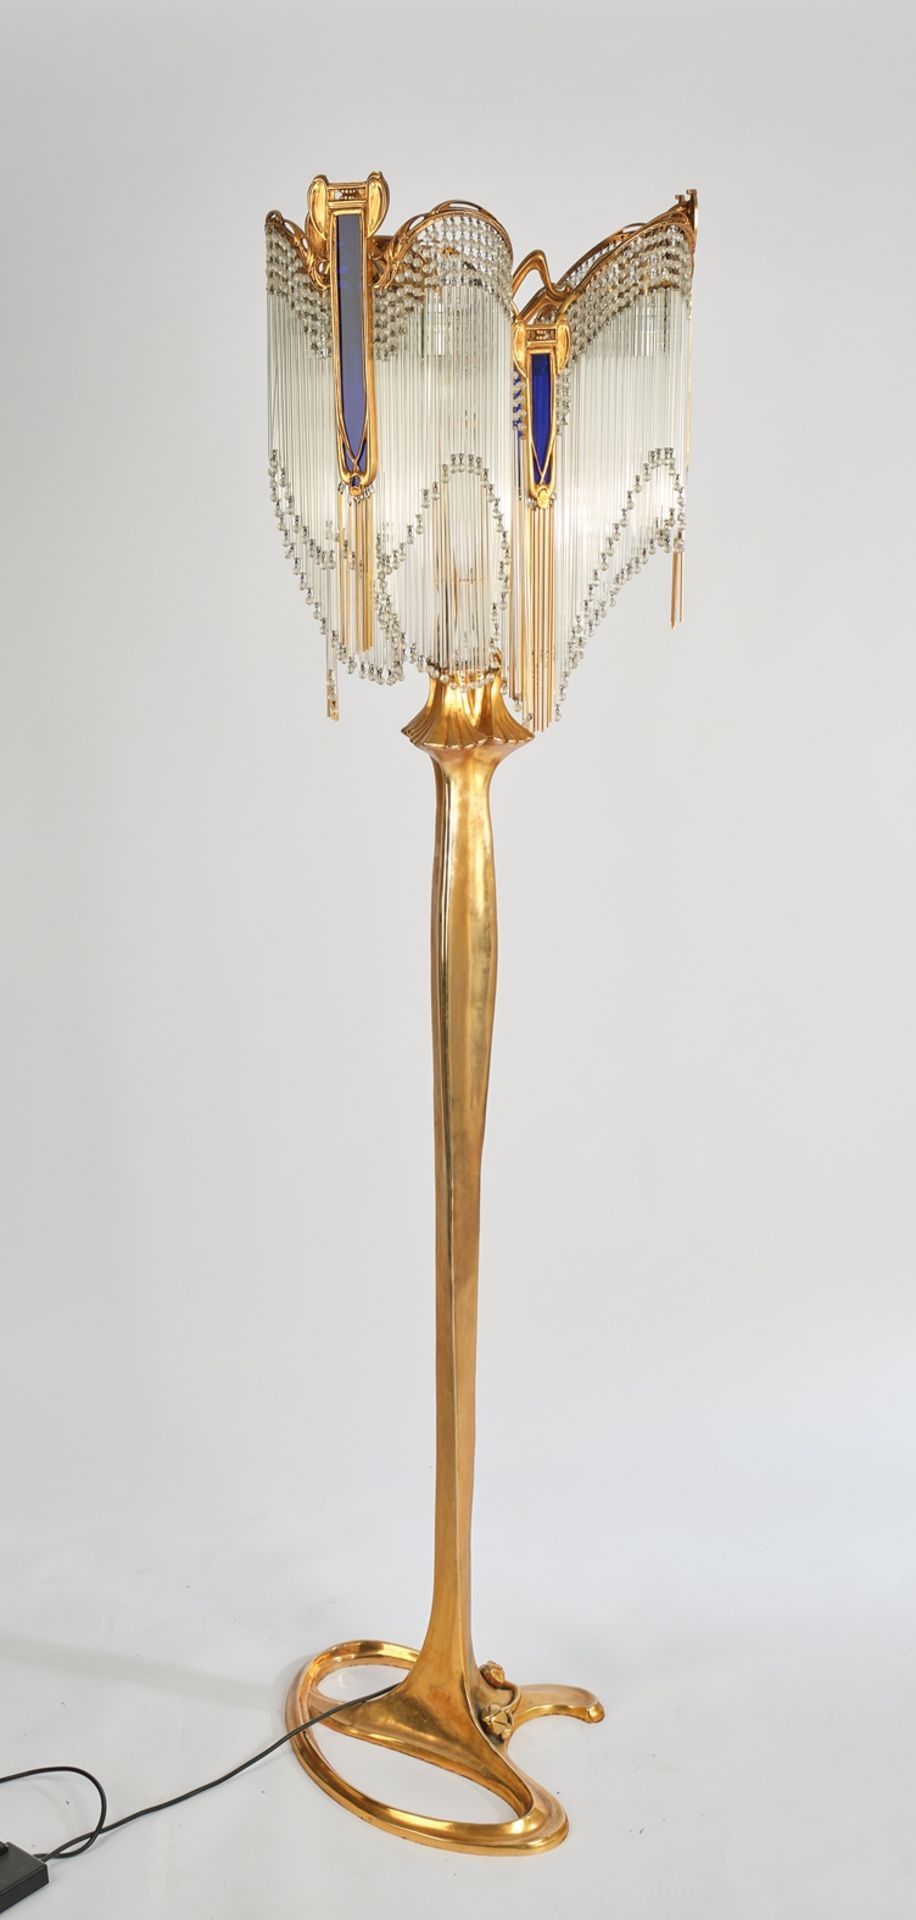 Stehlampe, 2. Hälfte 20. Jh., Bronze, vergoldet, Jugendstildekor, asymmetrischer Fuß mit plastische